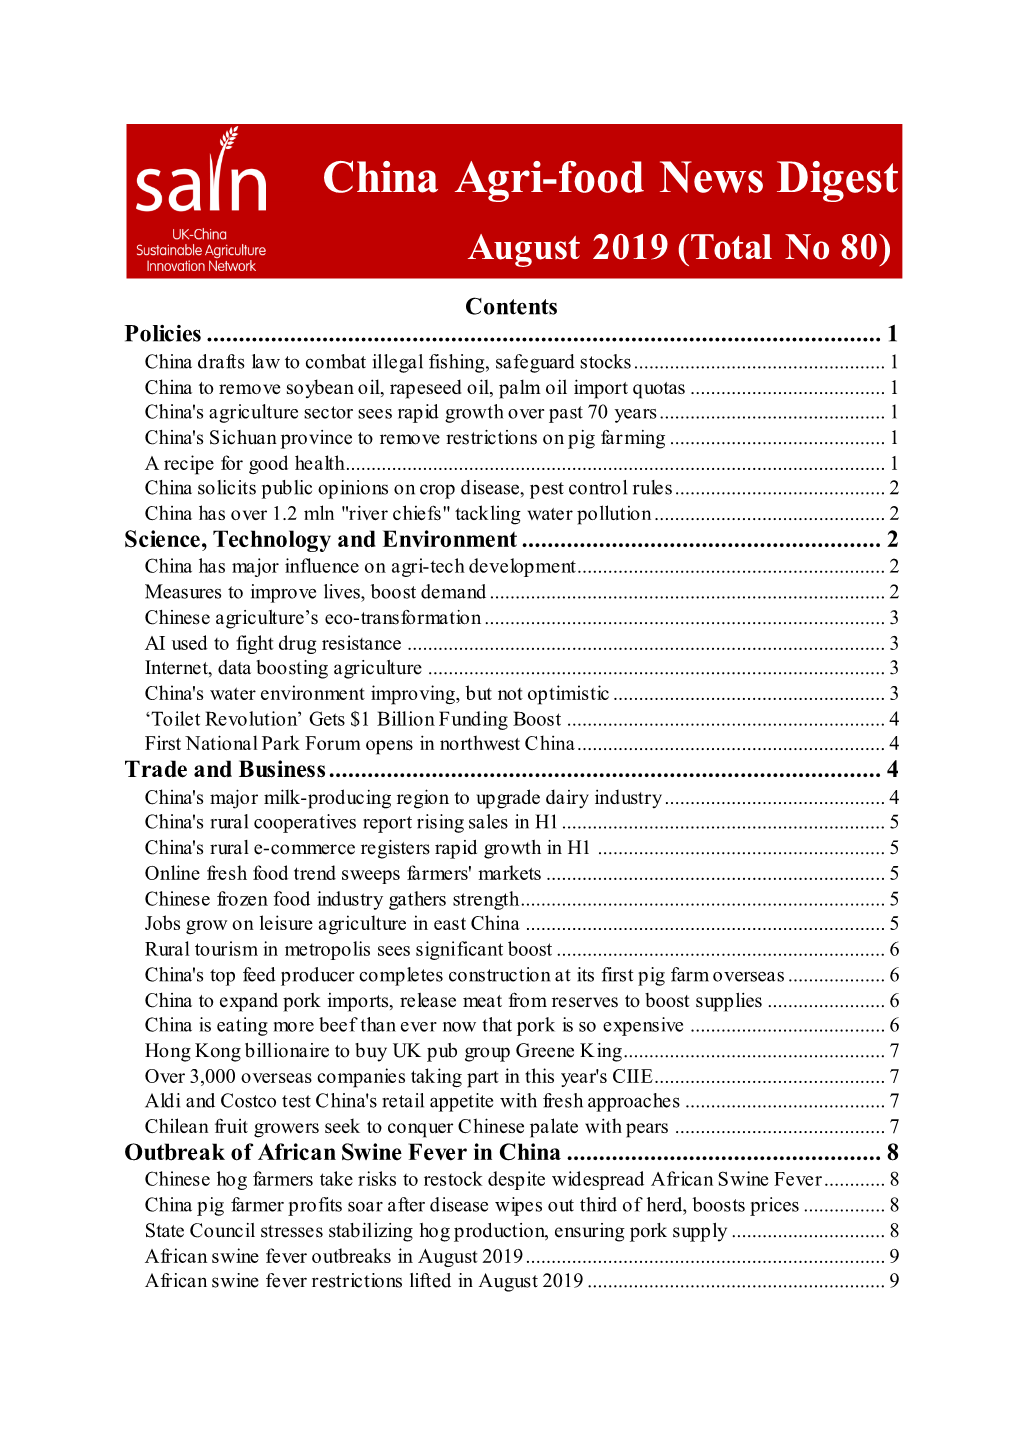 China Agri-Food News Digest Aug 2019